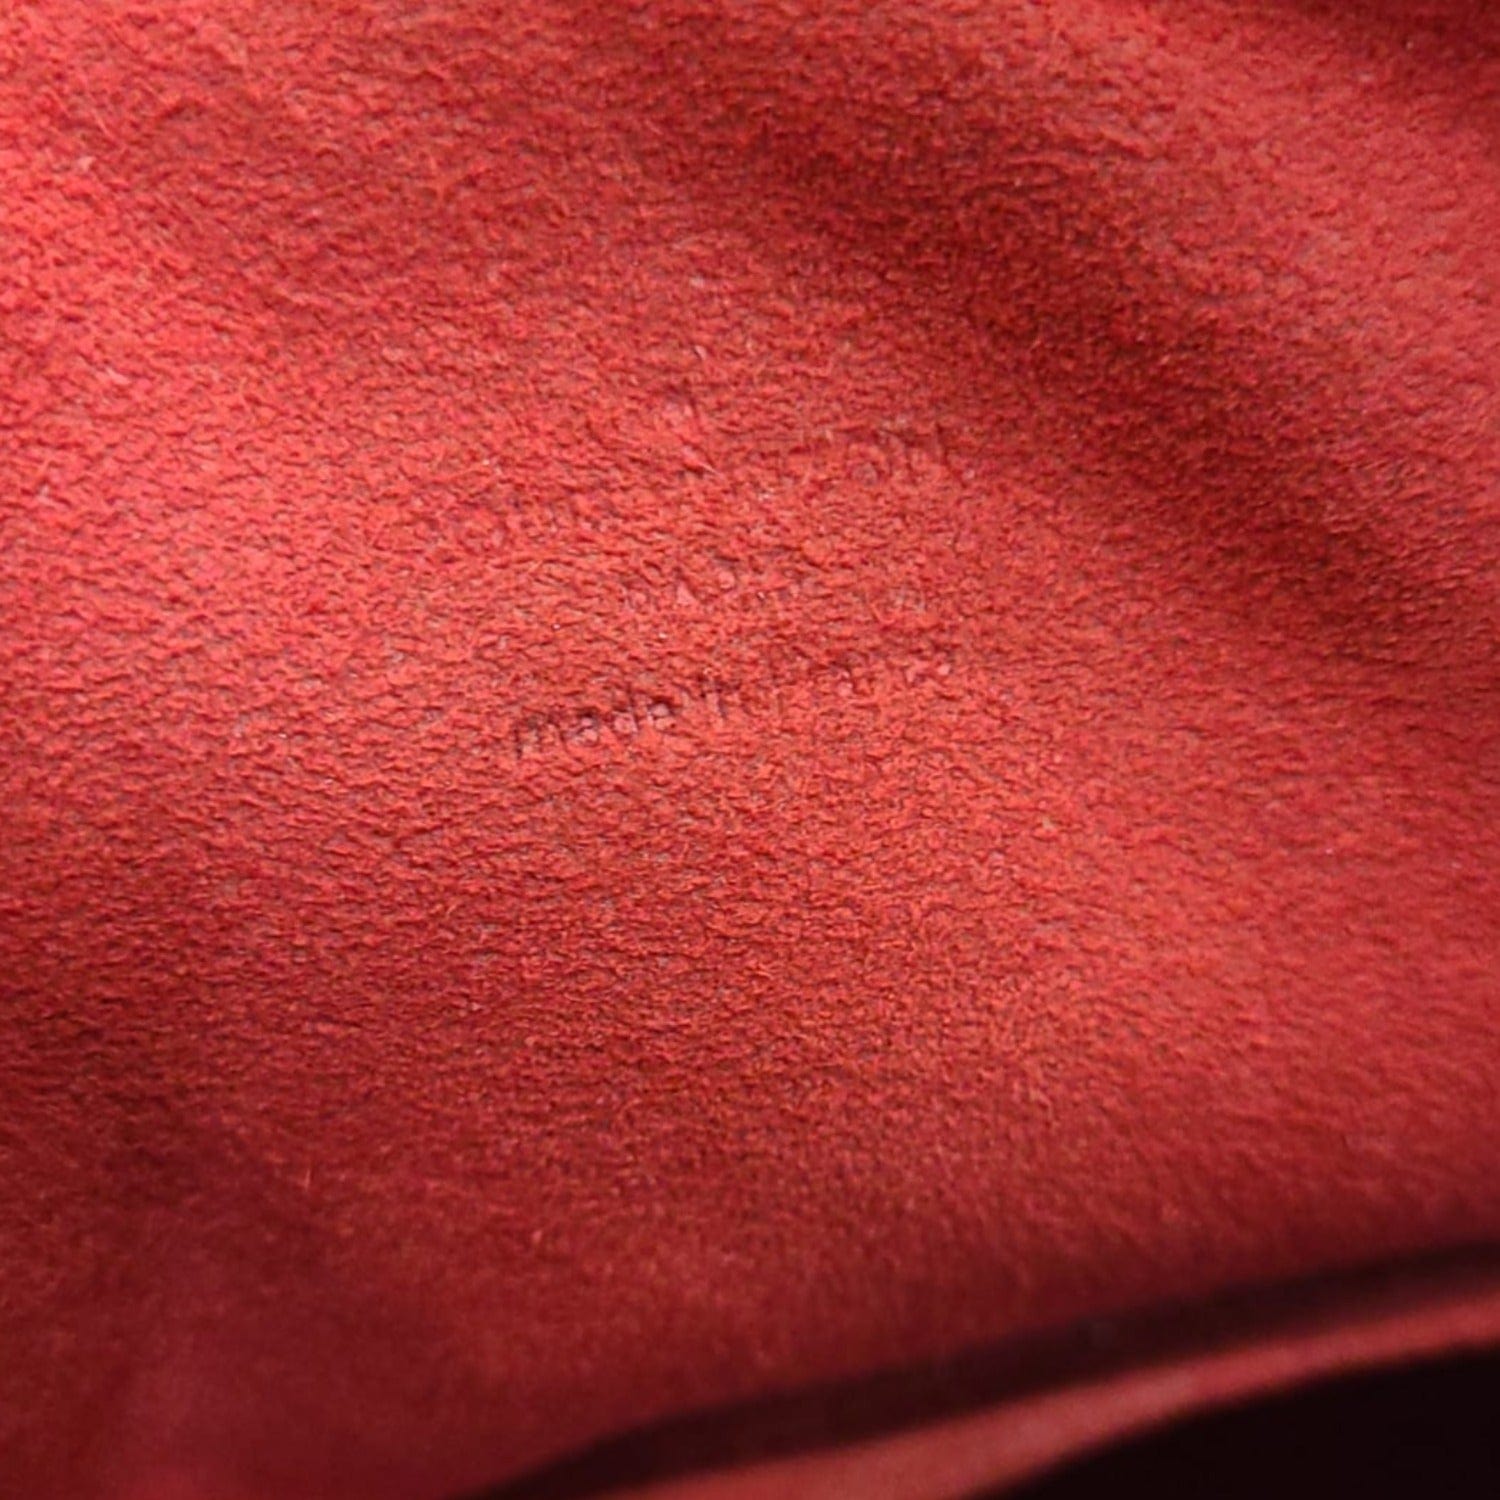 Berkeley cloth handbag Louis Vuitton Brown in Cloth - 25290095